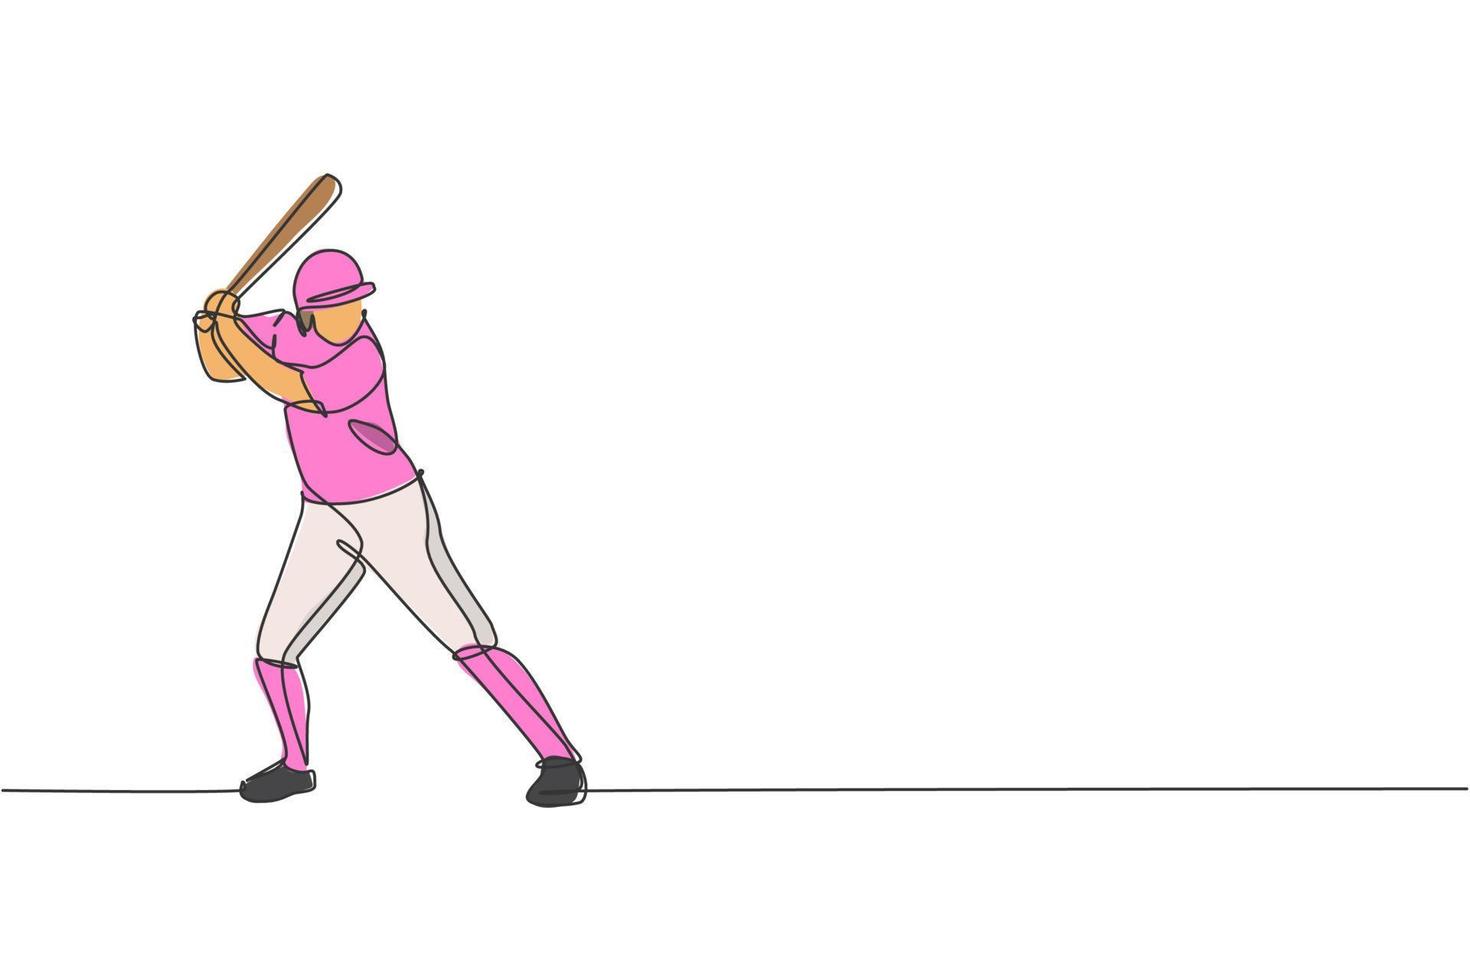 einzelne durchgehende Linienzeichnung eines jungen agilen Baseballspielers, der bereit ist, den Ball zu schlagen. Sportübungskonzept. trendige Grafikdesign-Vektorillustration mit einer Linie für Baseball-Werbemedien vektor